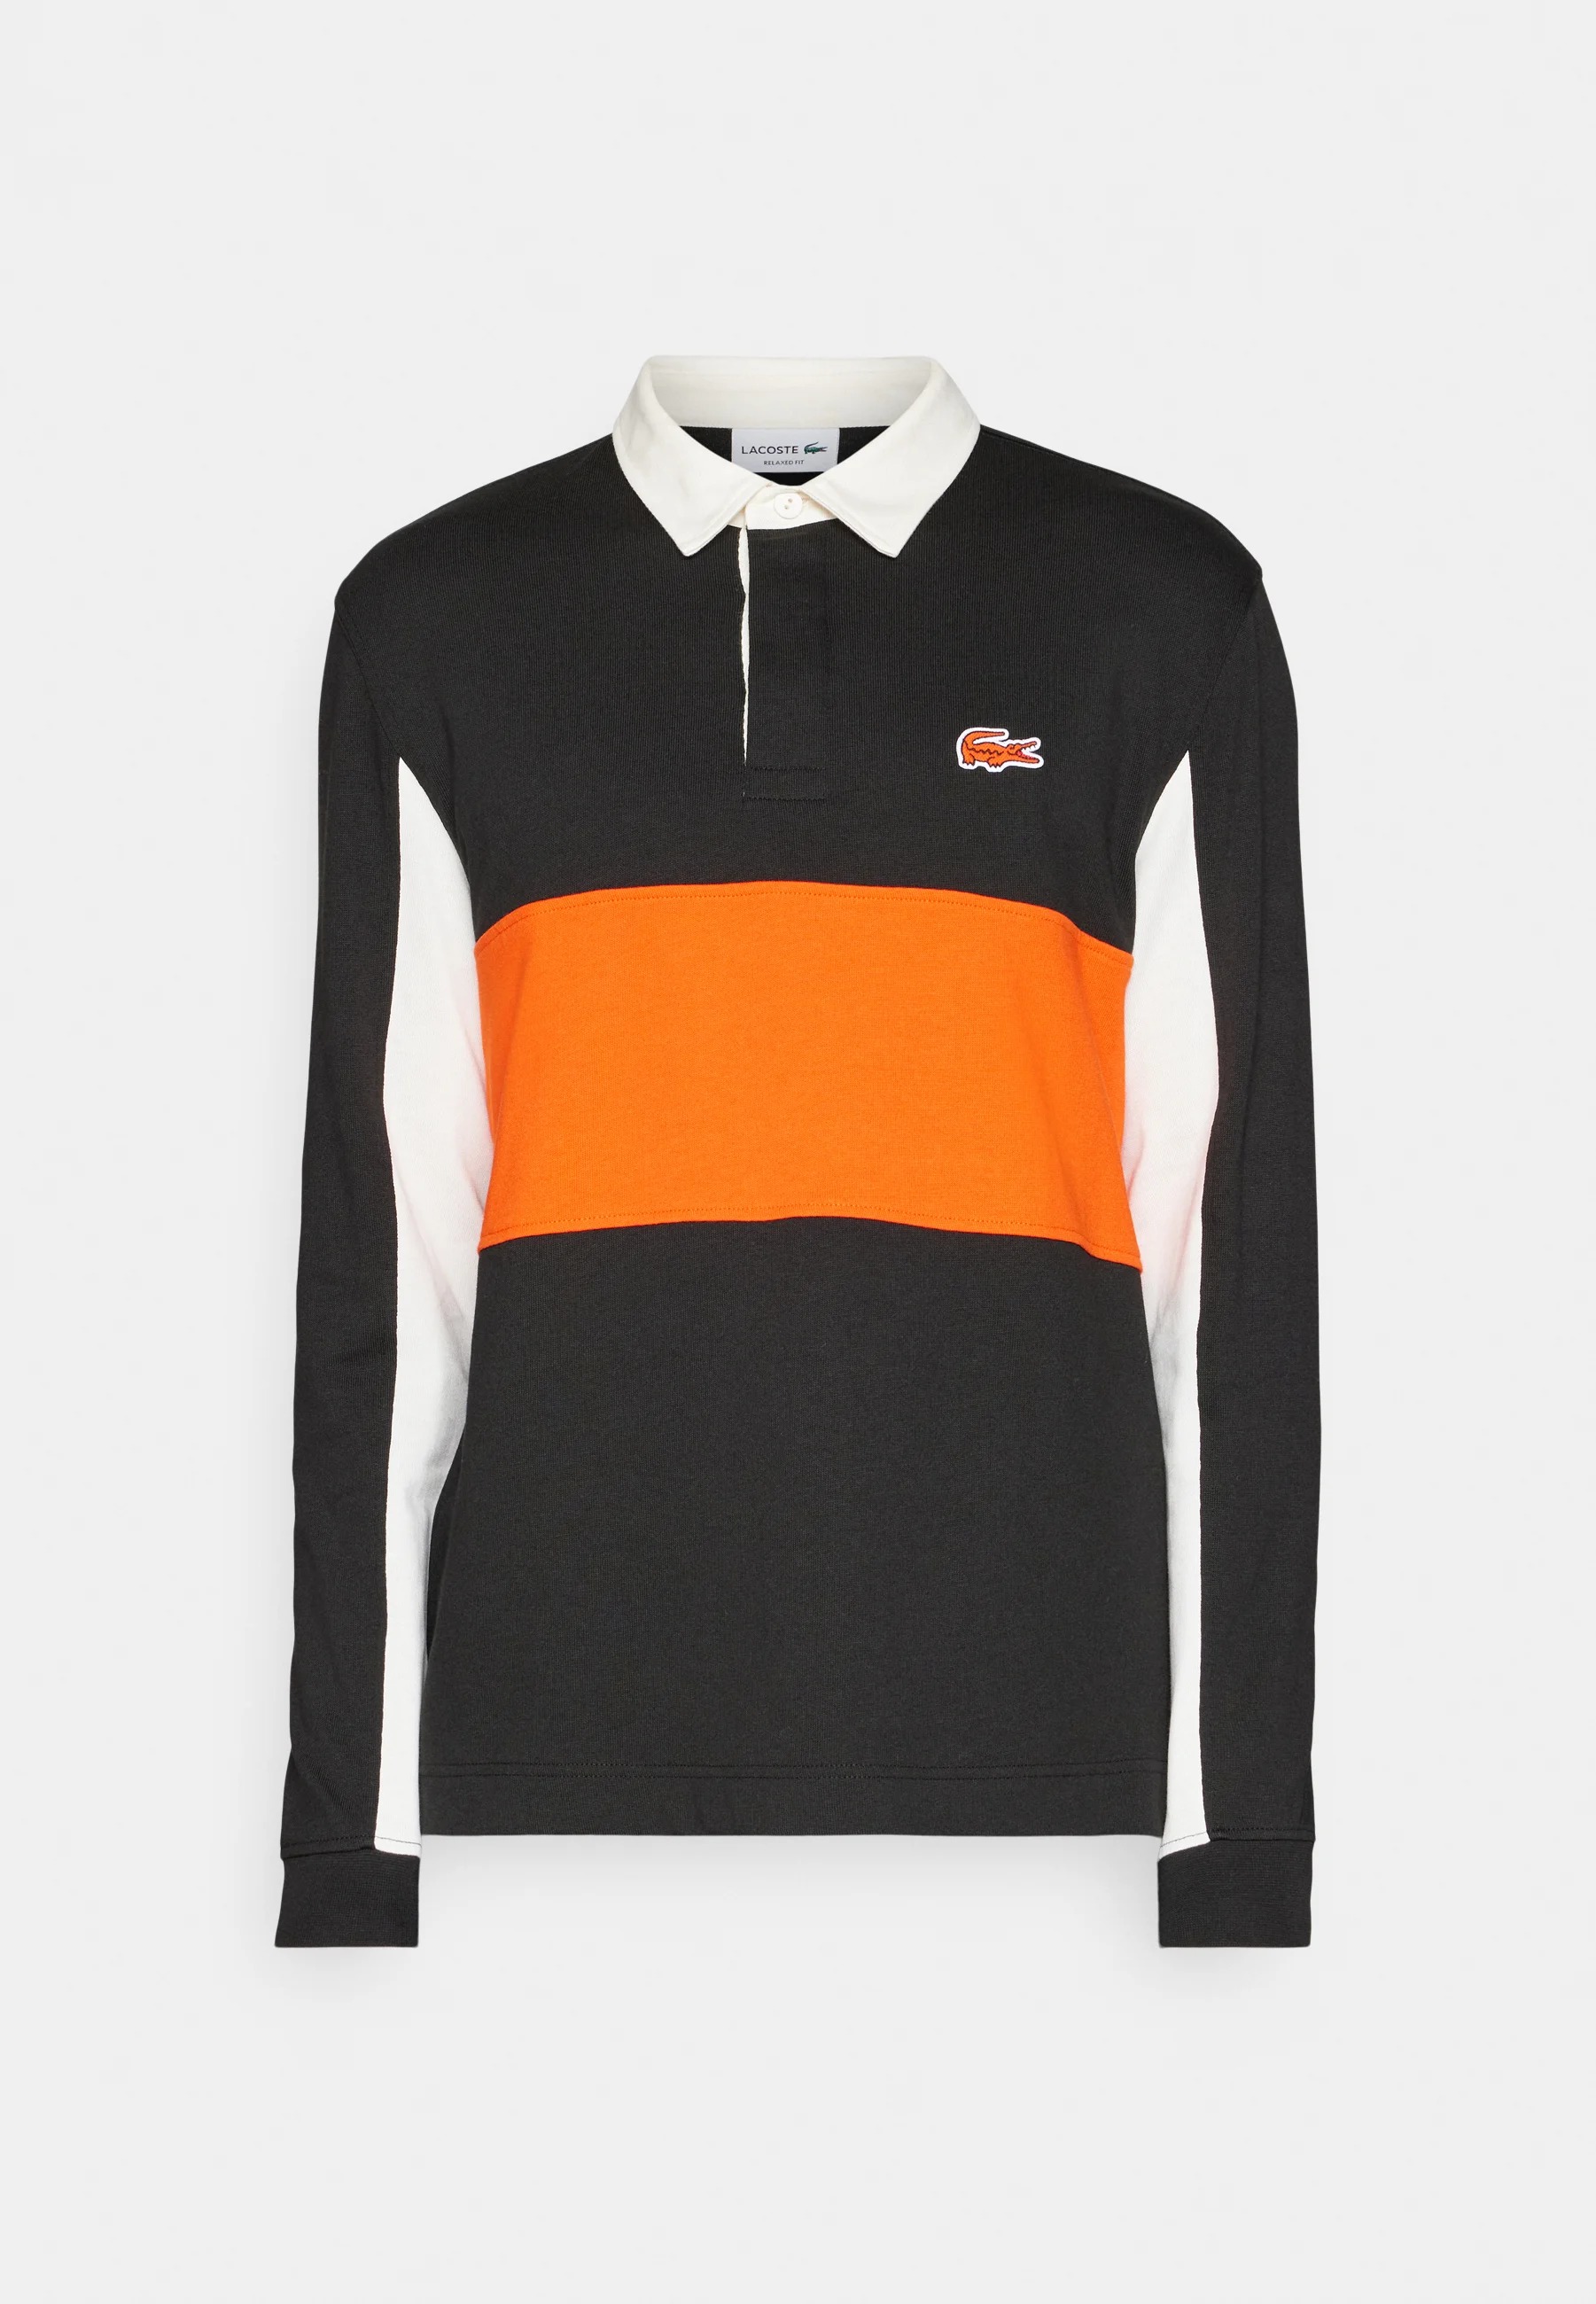 Футболка Lacoste Exclusive Unisex Long Sleeve, черный, оранжевый, белый цена и фото